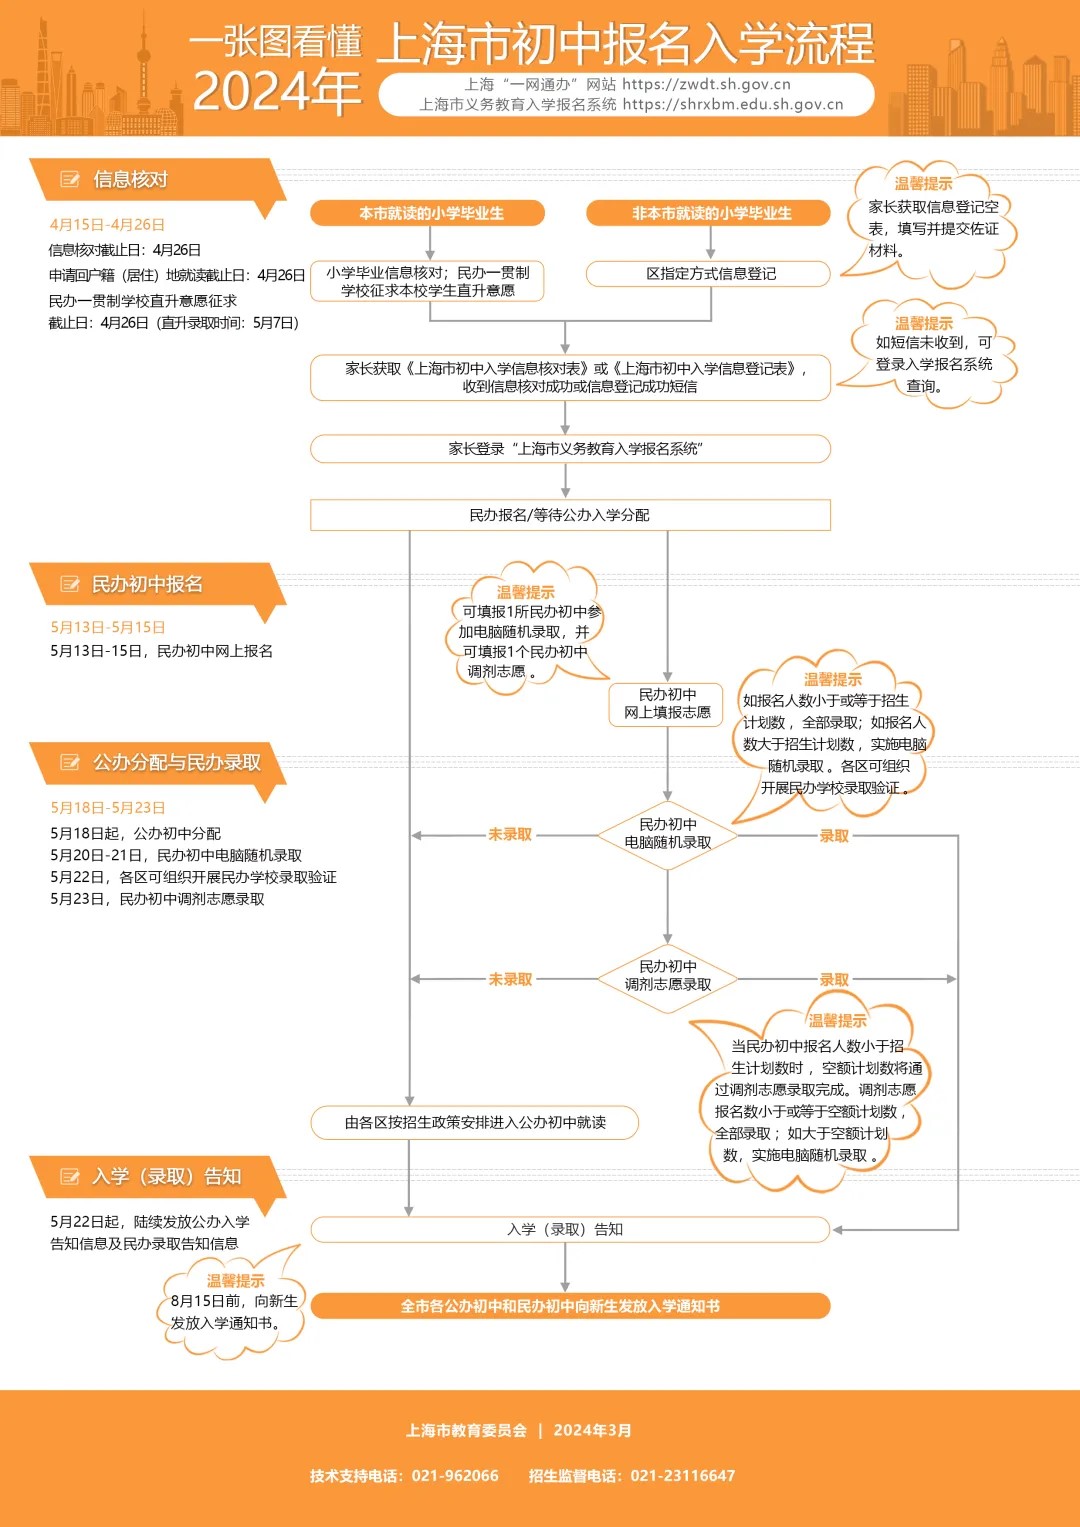 2024上海小升初系统操作流程